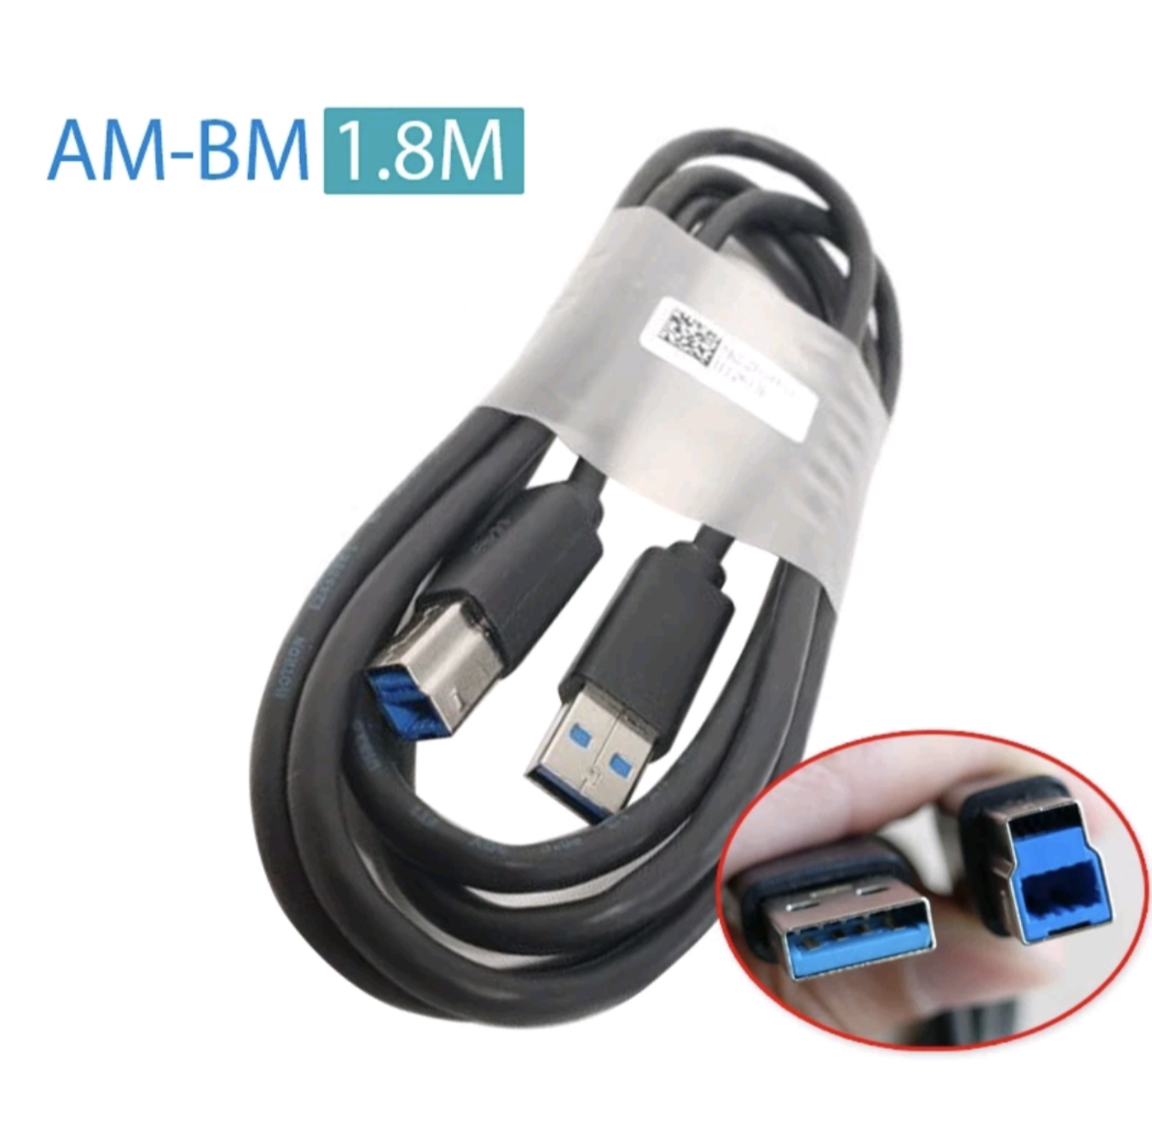 Cáp USB 3.0 Type B dài 1.8M AM-BM hàng zin hãng theo màn hình cáp máy in, cáp hdd box cáp usb 3.0 type A sang type B dài 1.8M